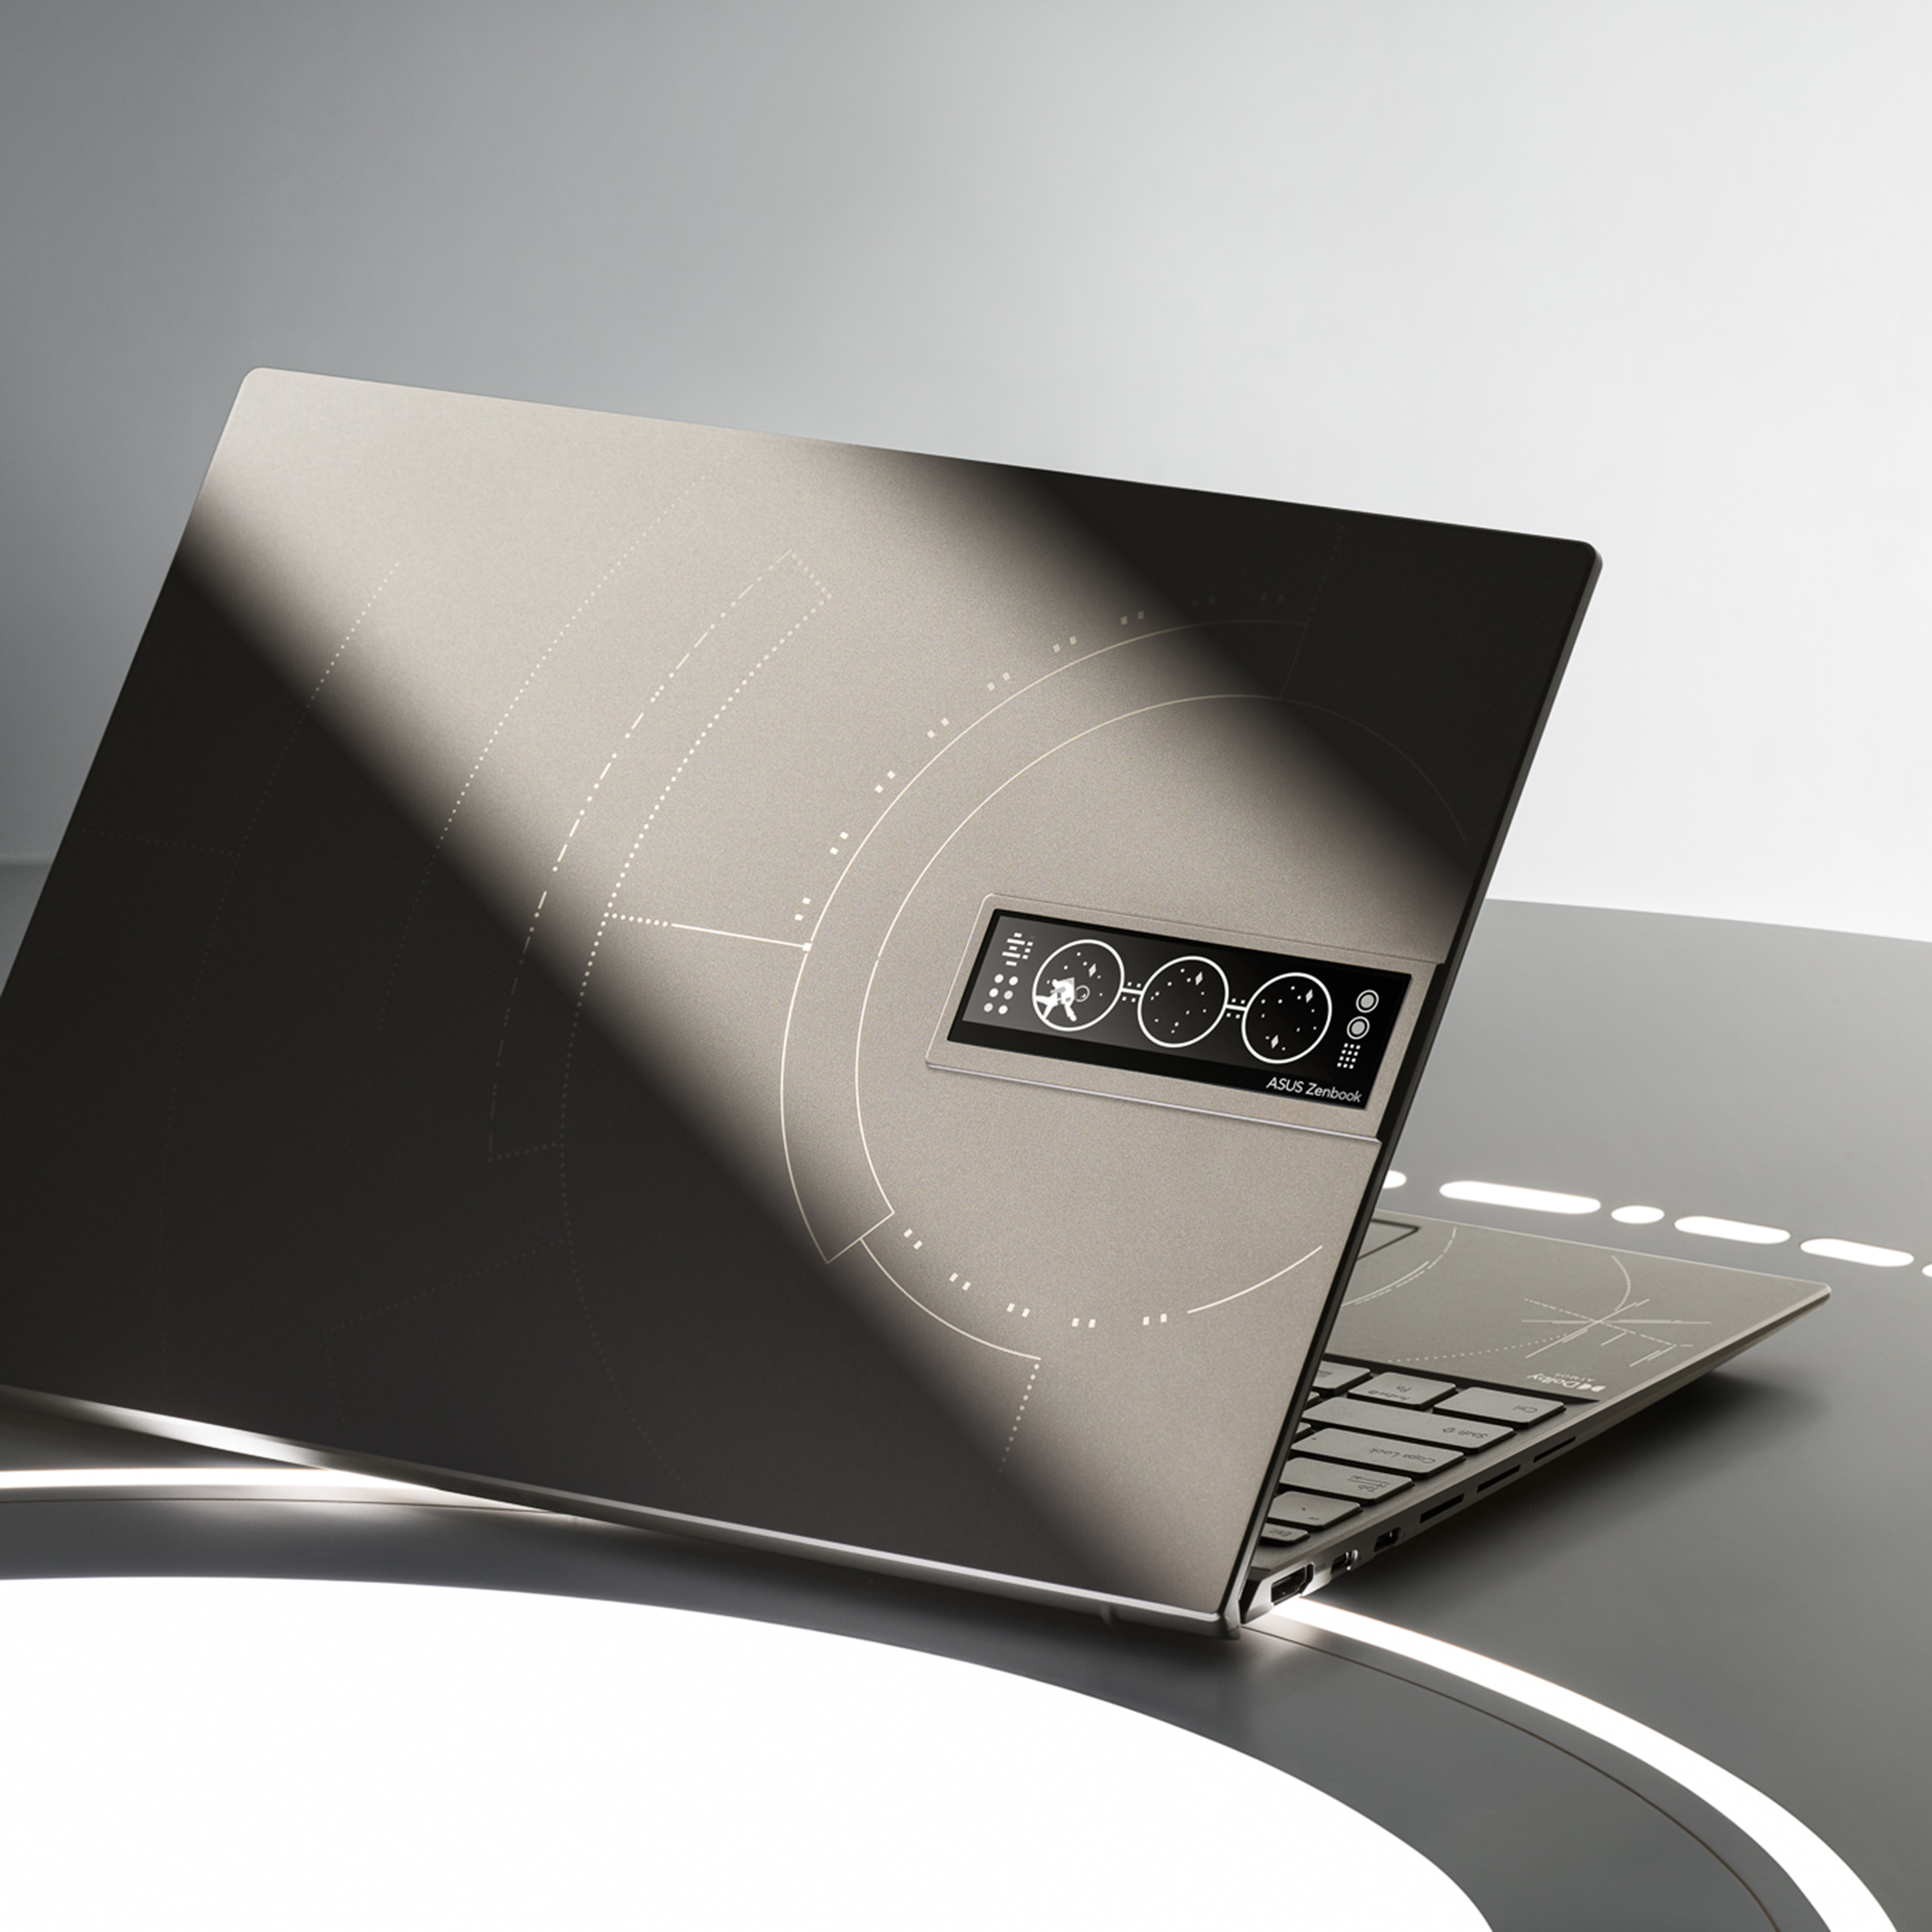 ASUS ZenBook Edition 『ASUS30周年スペシャルモデル』